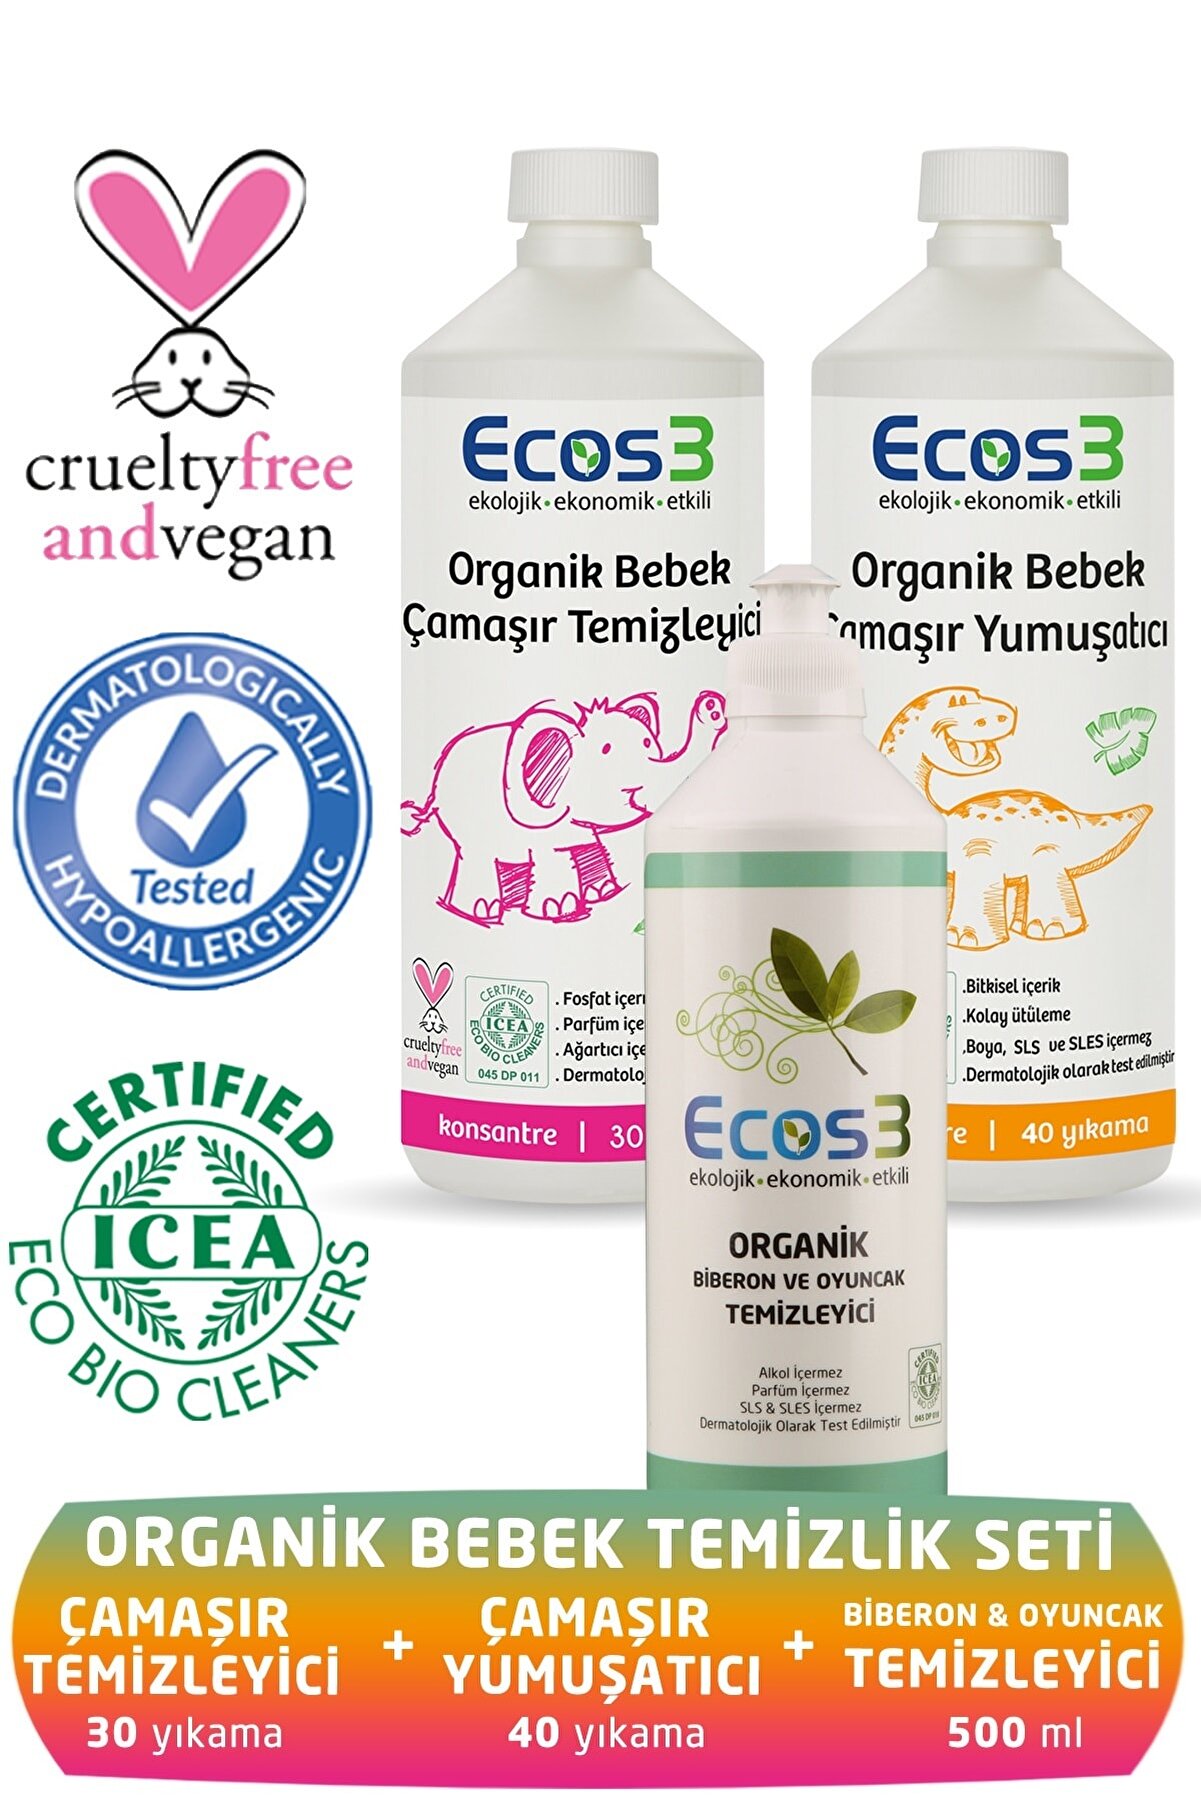 Ecos3 Organik Bebek Temizlik Seti ( 3 Ürün)(çamaşır Temizleyici Ve Yumuşatıcı + Biberon Temizleyici)